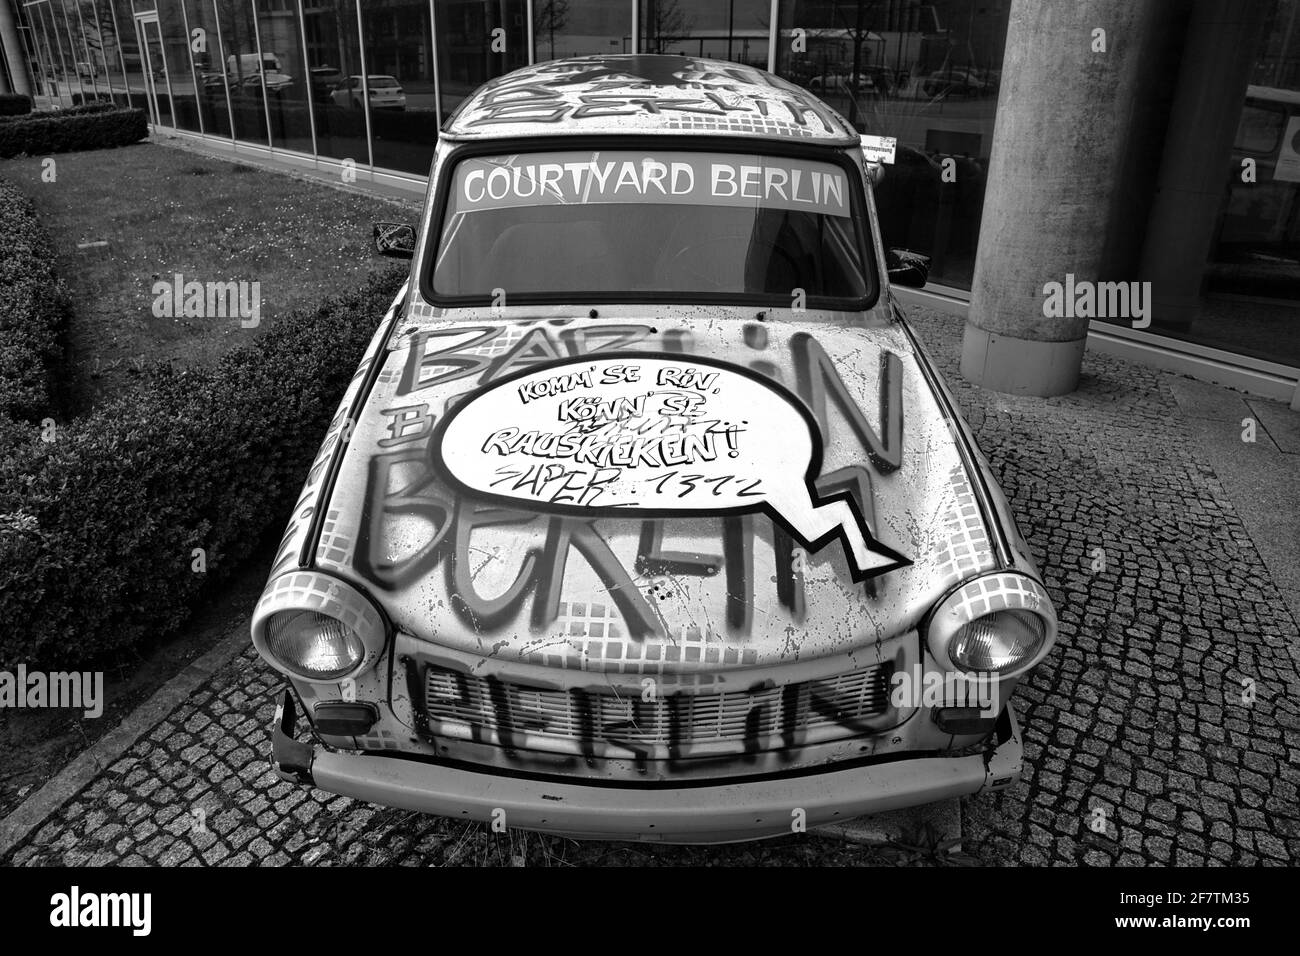 Trabant ( Trabi ) in der Axel-Springer-Str. in Berlin. Oldtimer mit künstlerischer Lackierung und Sprechblase auf der Motorhaube. Stock Photo